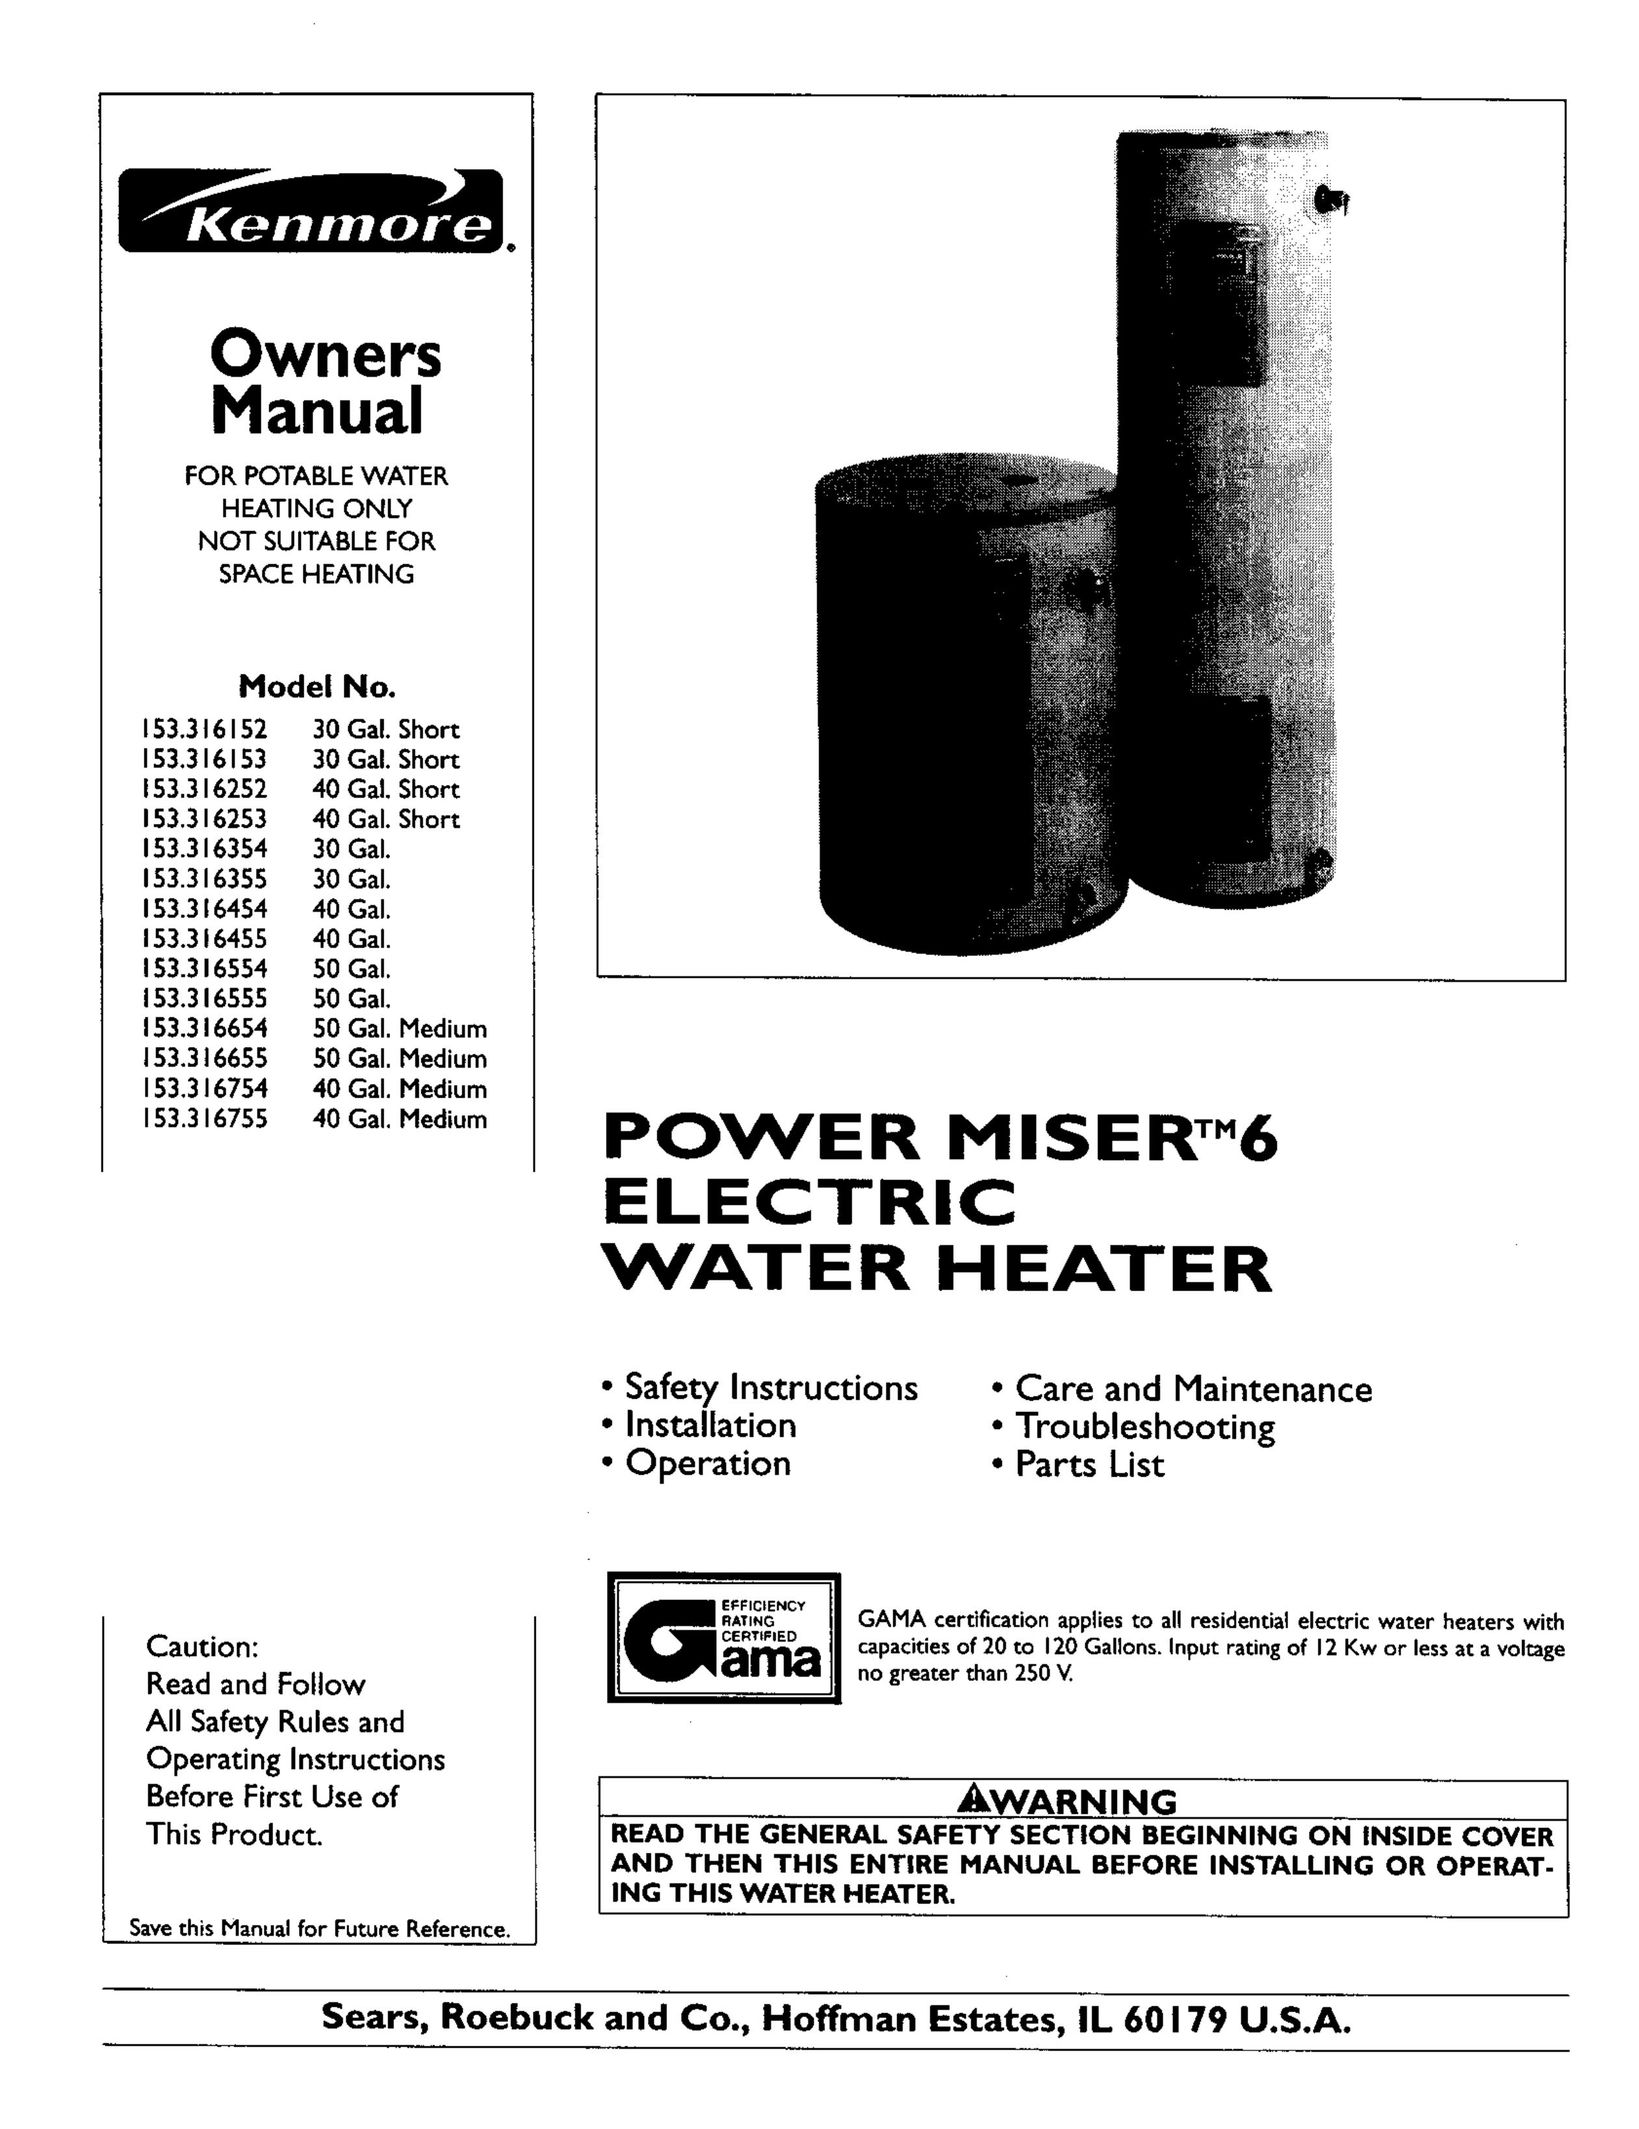 Kenmore 153.316454 Water Heater User Manual